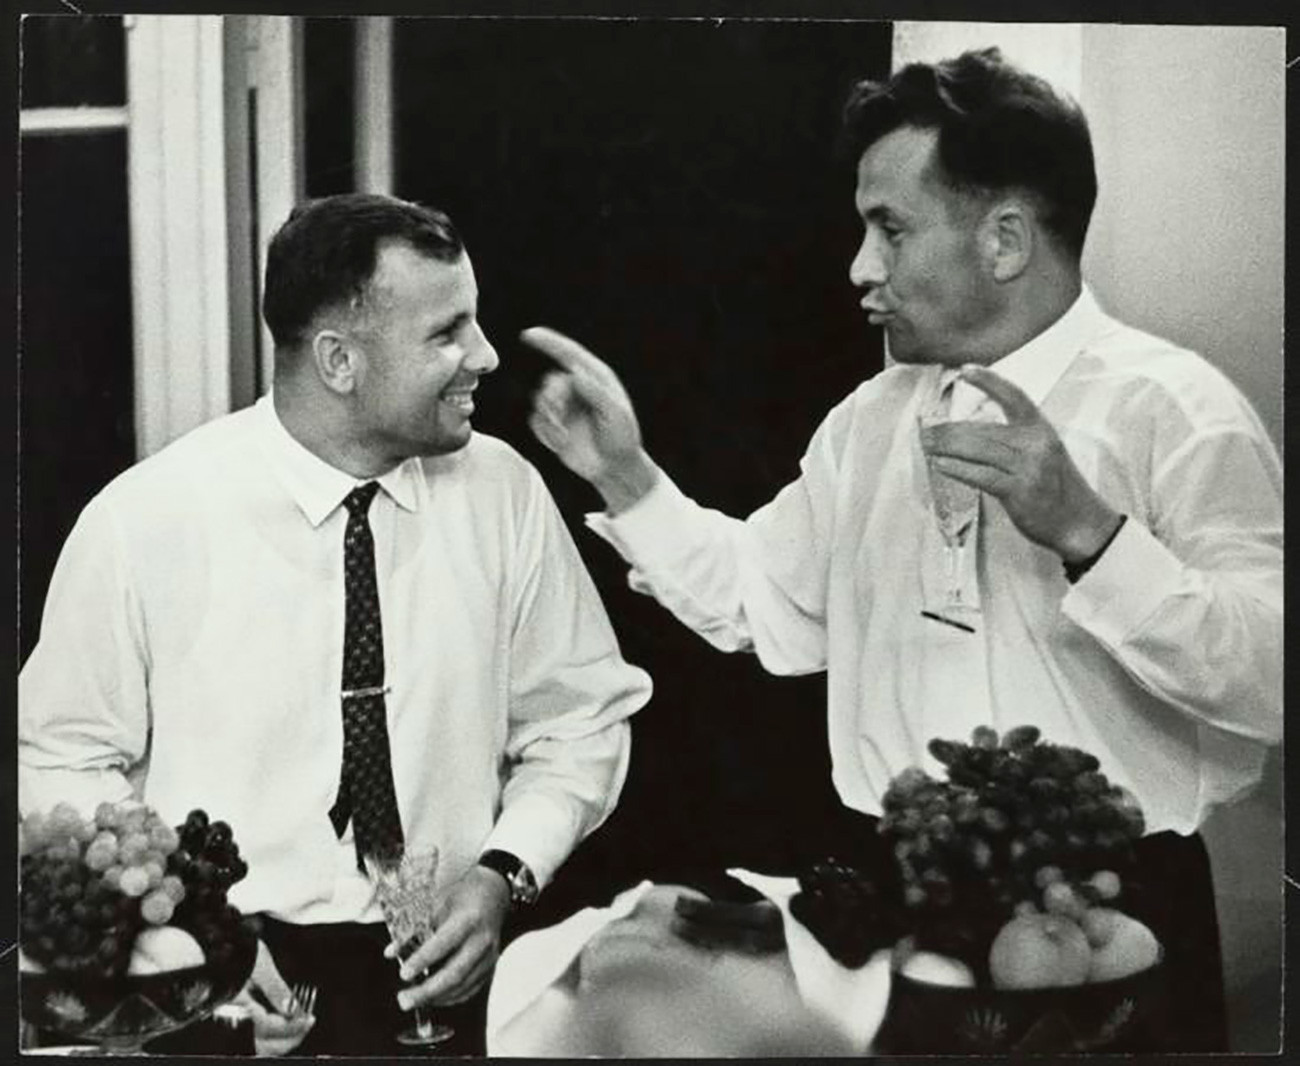 Iúri Gagárin e Pável Popóvitch. Popovitch foi o quarto cosmonauta soviético a realizar uma missão no espaço, o sexto ser humano em órbita. 